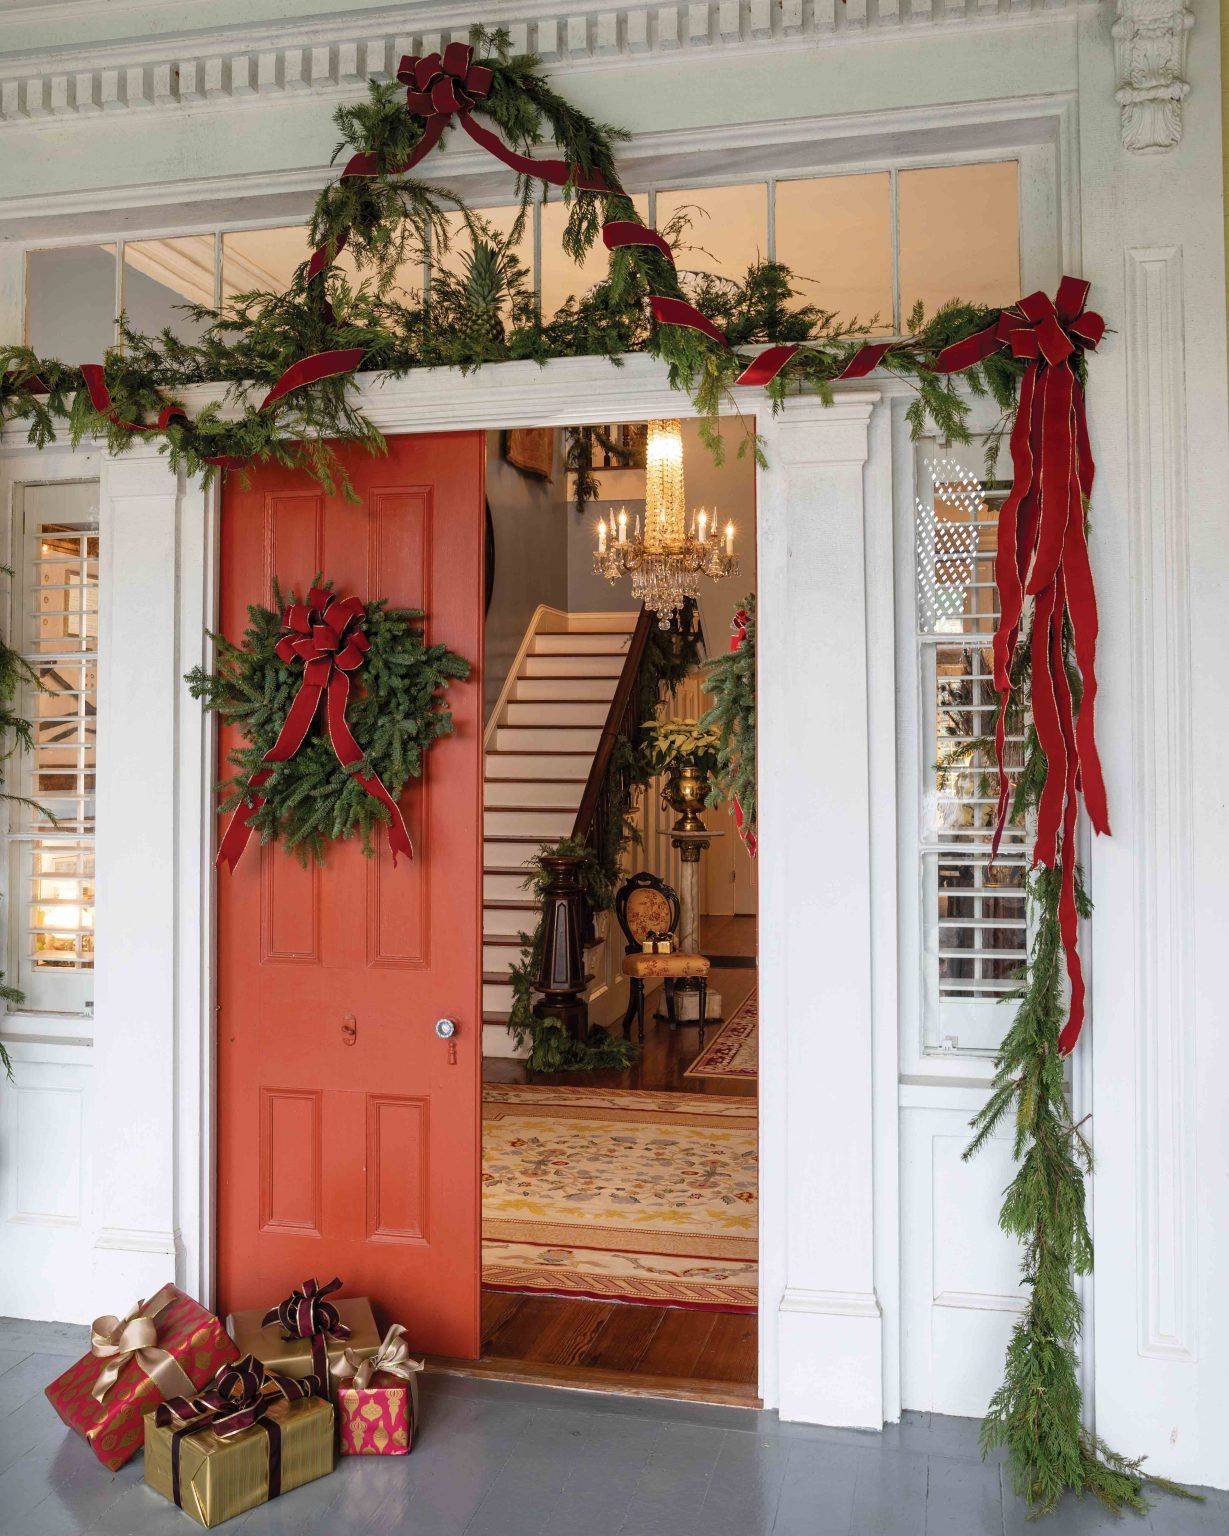 Christmas-evergreen-decor-front-door-entryway-1229x1536.jpg